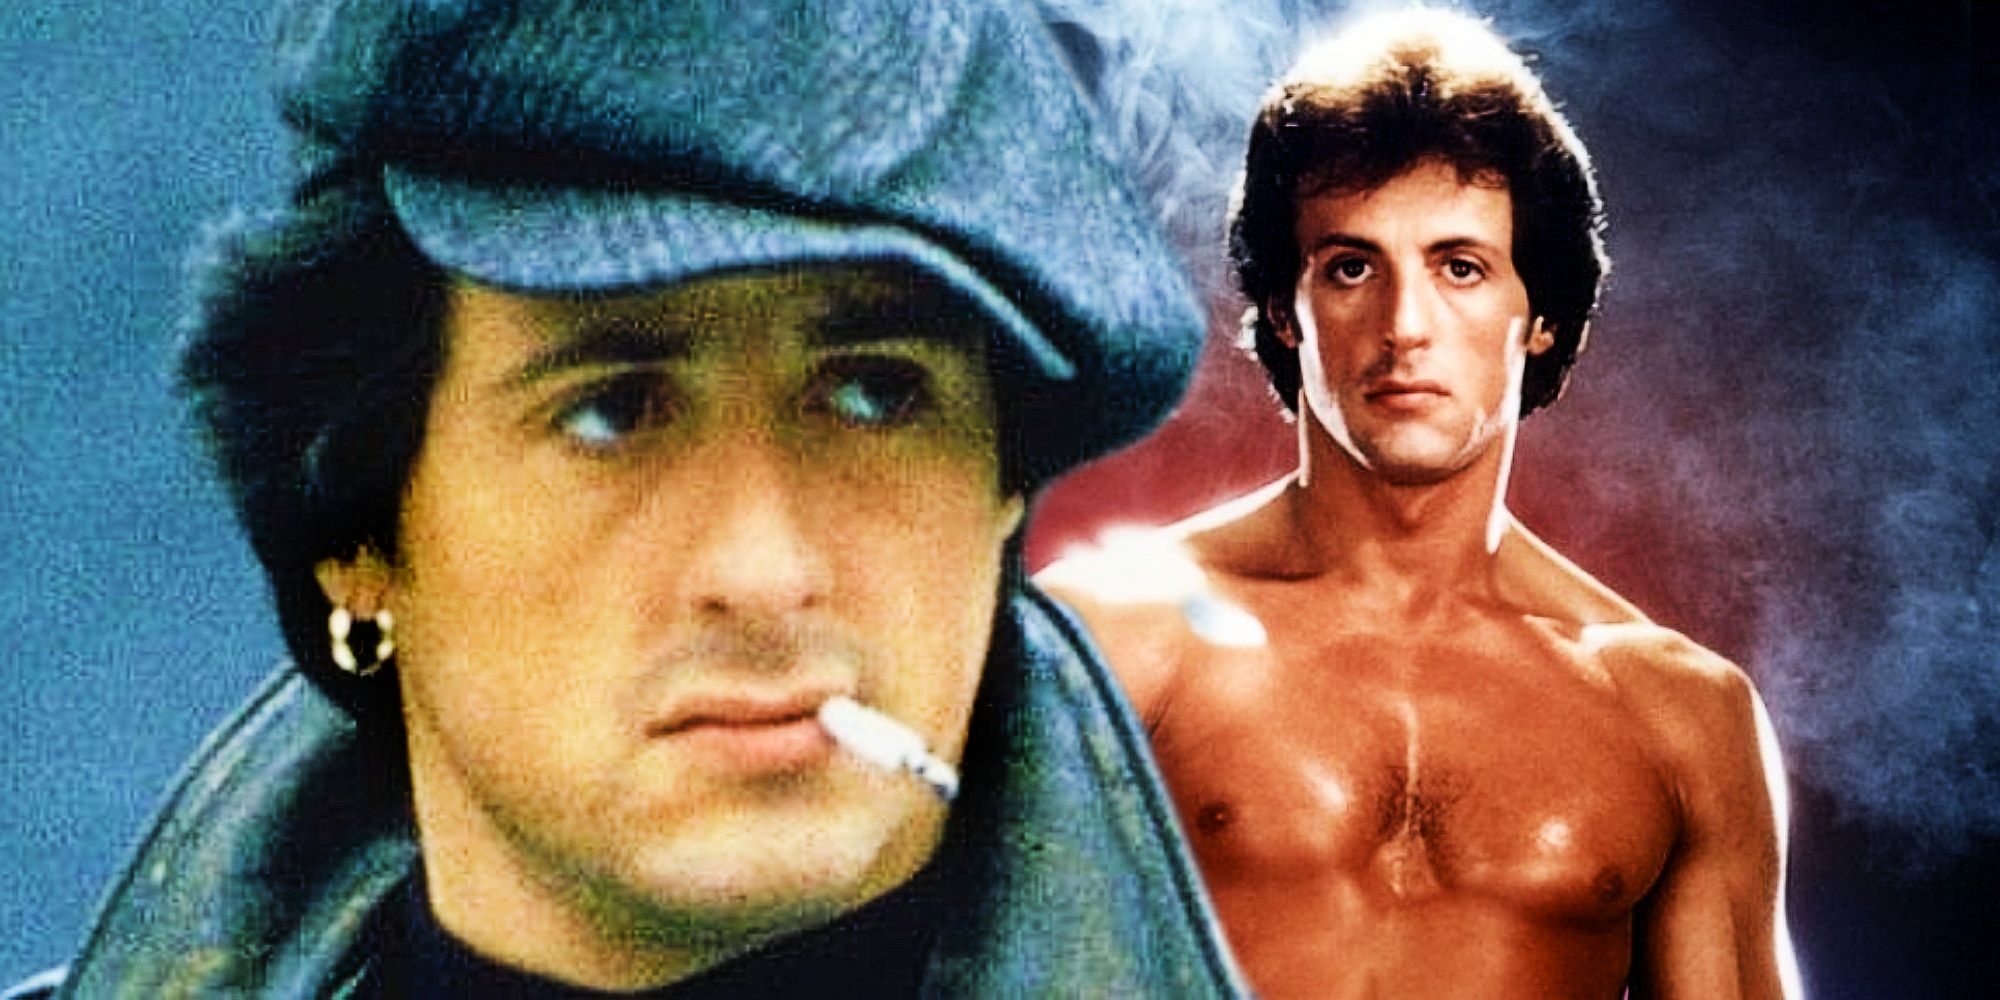 A young Sylvester Stallone as Rocky Balboa